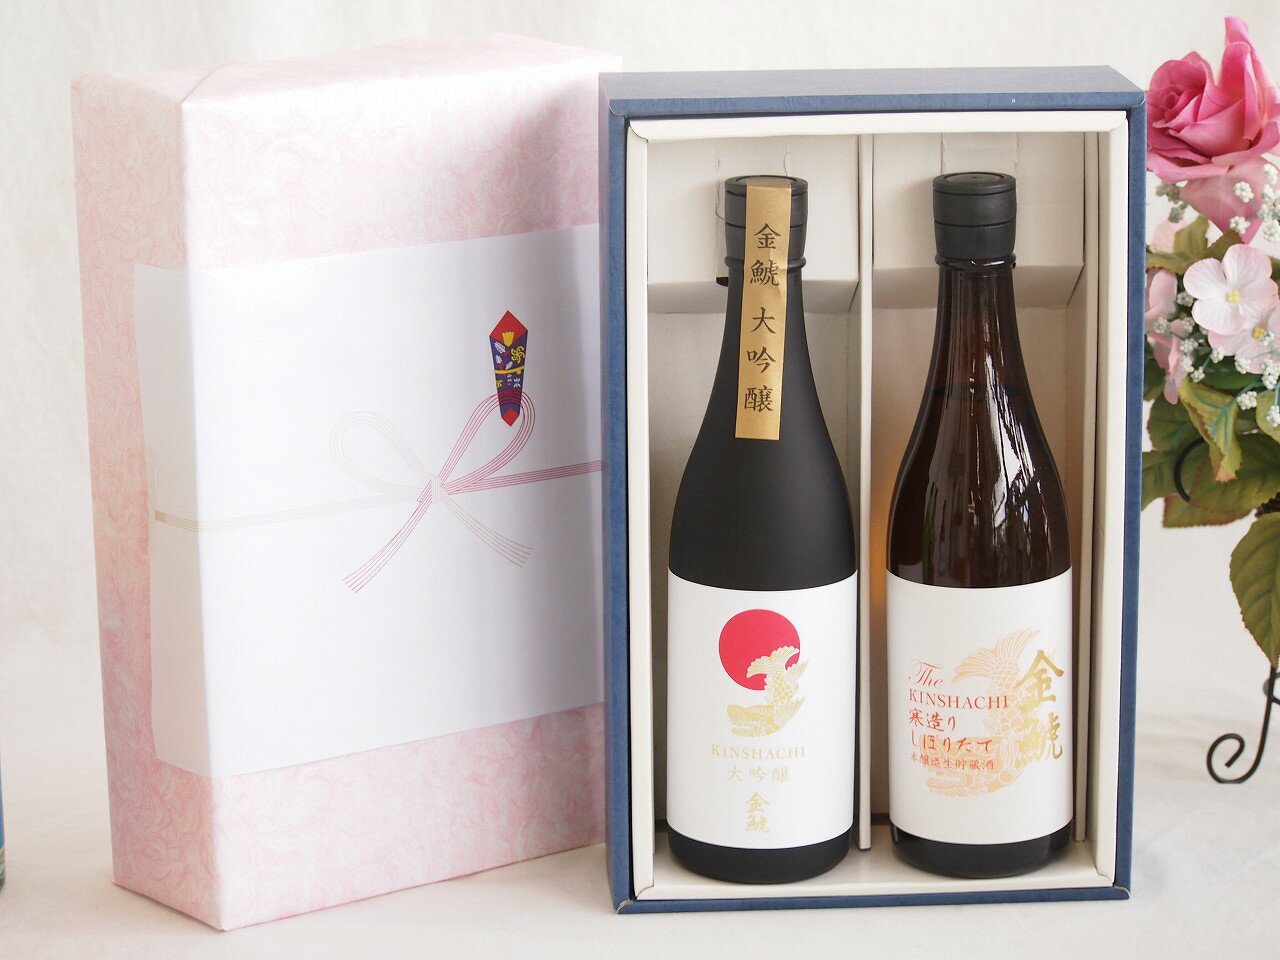 贅沢な日本酒感謝ボックス2本セット(金鯱寒造りしぼりたて本醸造生貯蔵(愛知) 金鯱大吟醸(愛知)) 720ml×2本